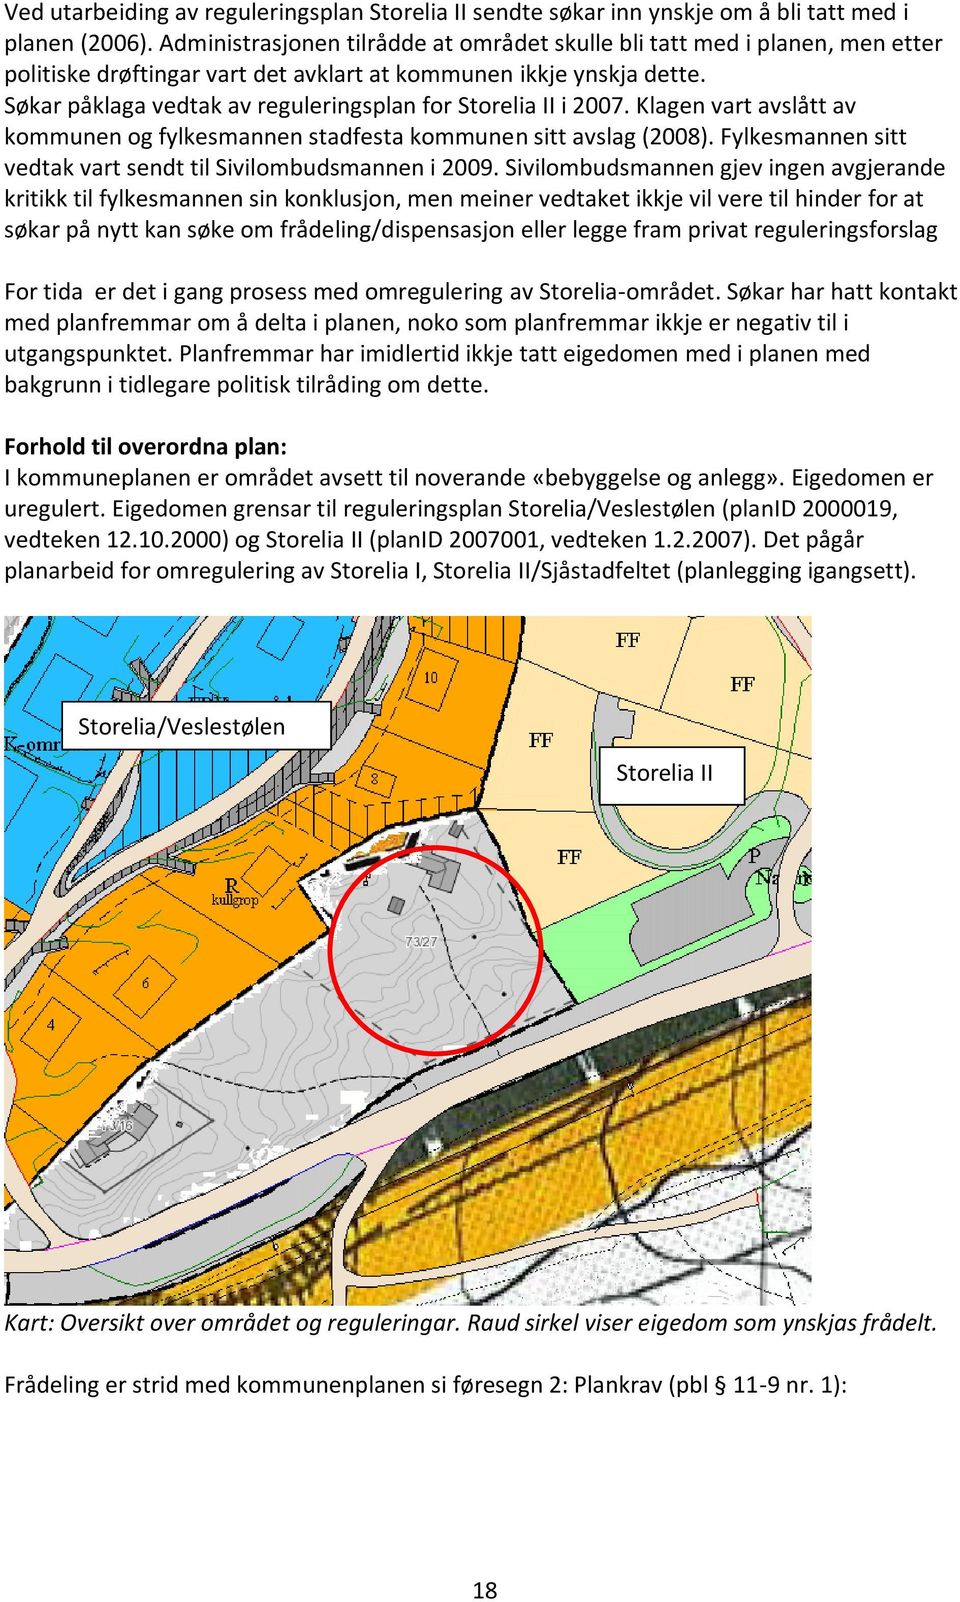 Søkar påklaga vedtak av reguleringsplan for Storelia II i 2007. Klagen vart avslått av kommunen og fylkesmannen stadfesta kommunen sitt avslag (2008).